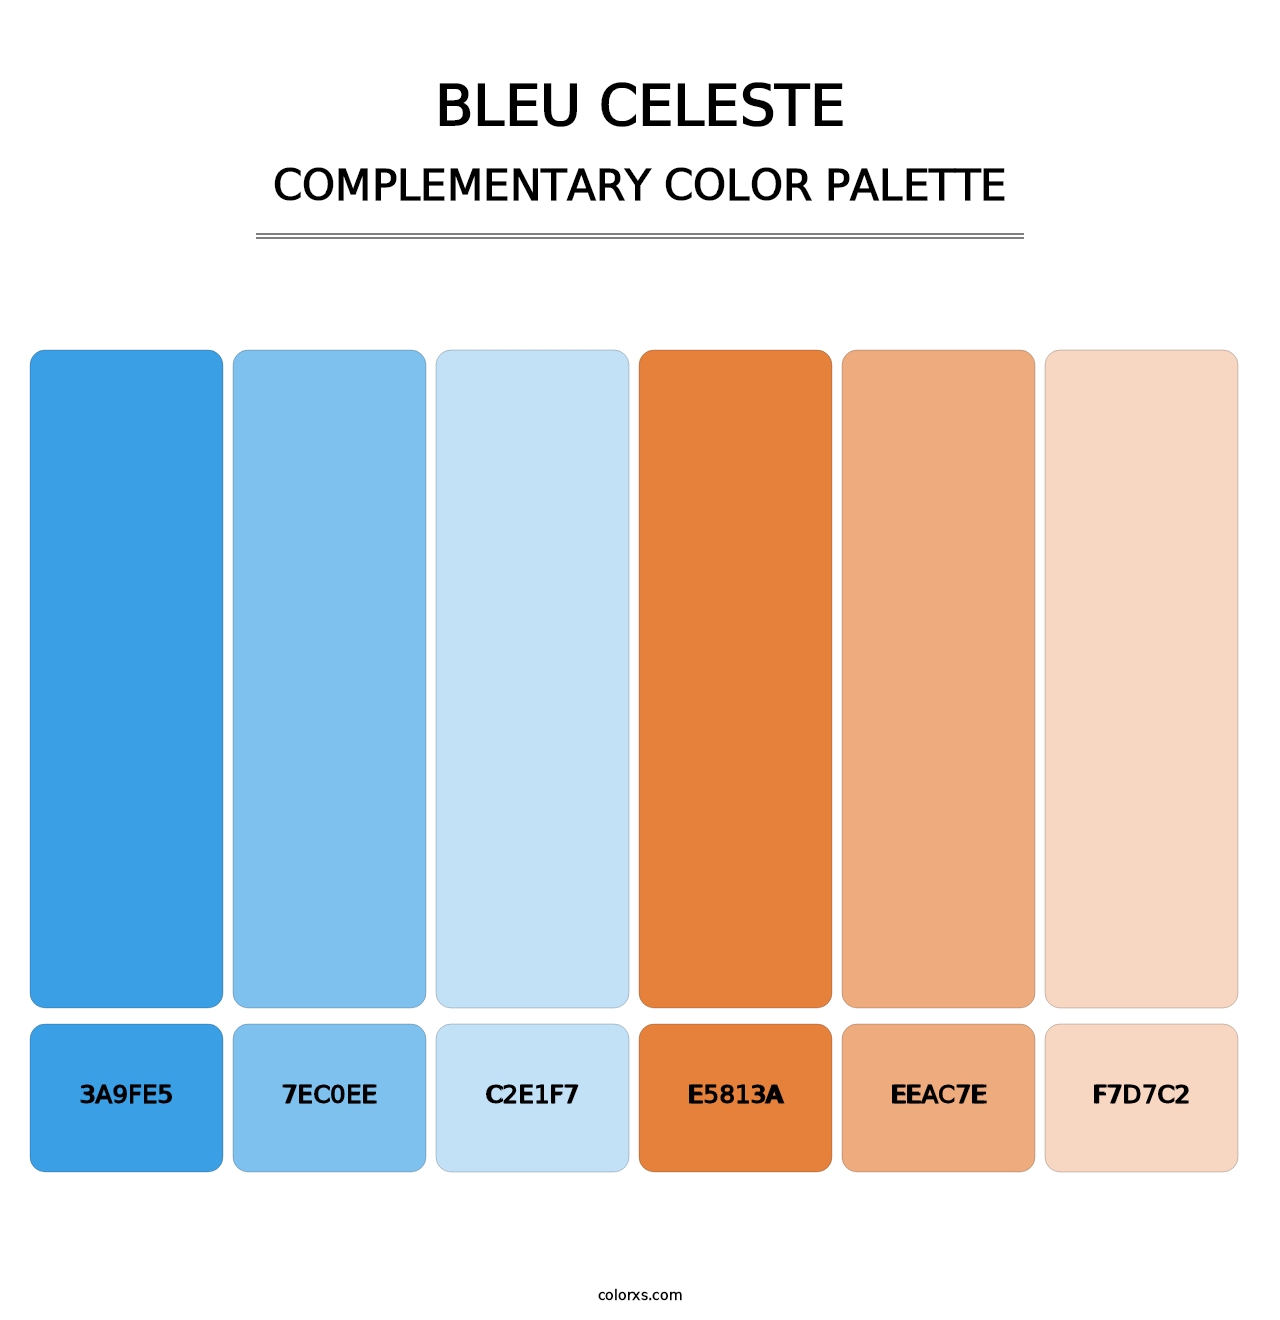 Bleu Celeste - Complementary Color Palette